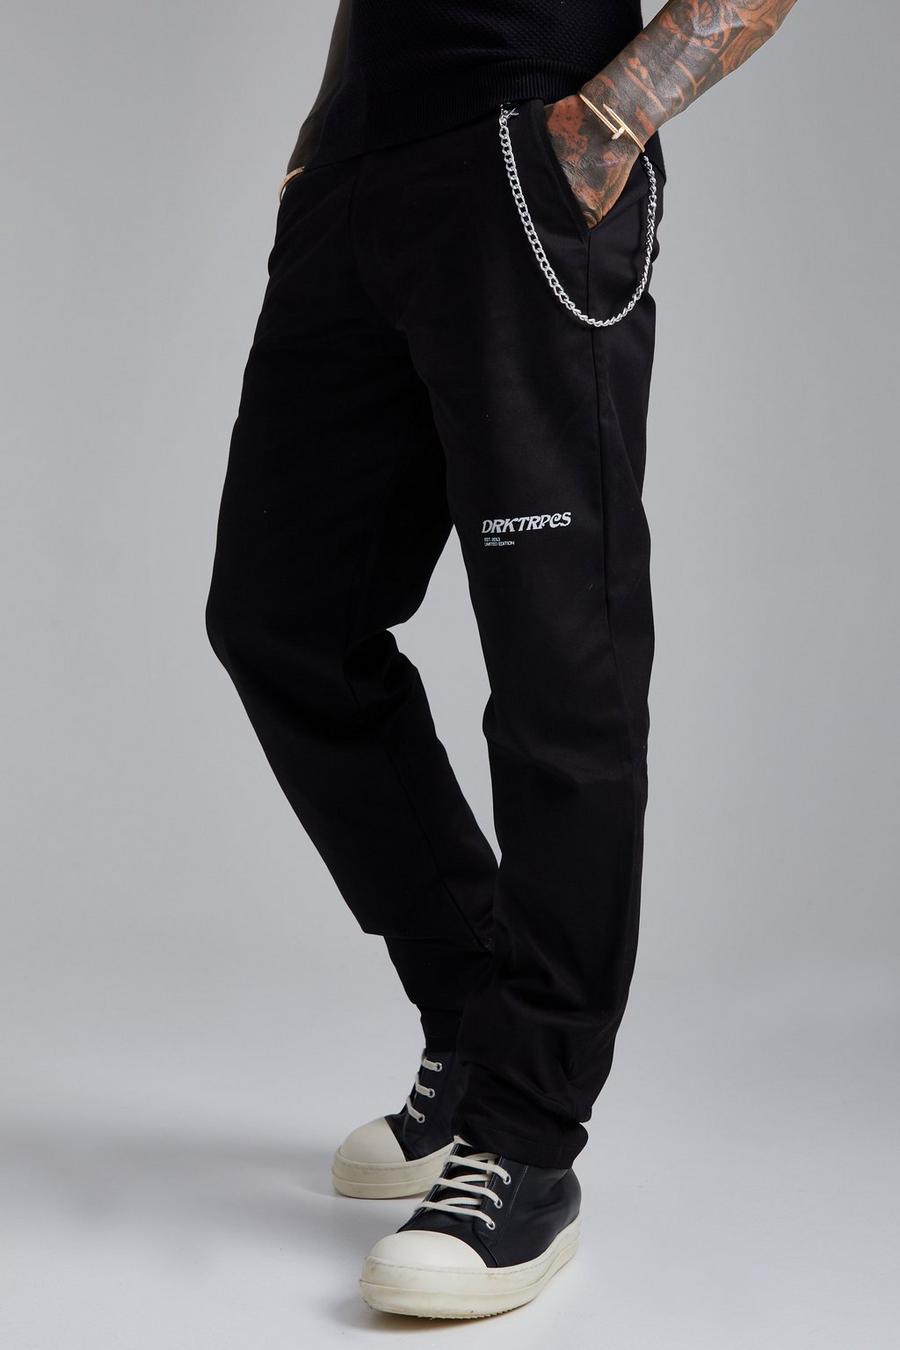 Lockere Chino-Hose mit Print und Kette, Black schwarz